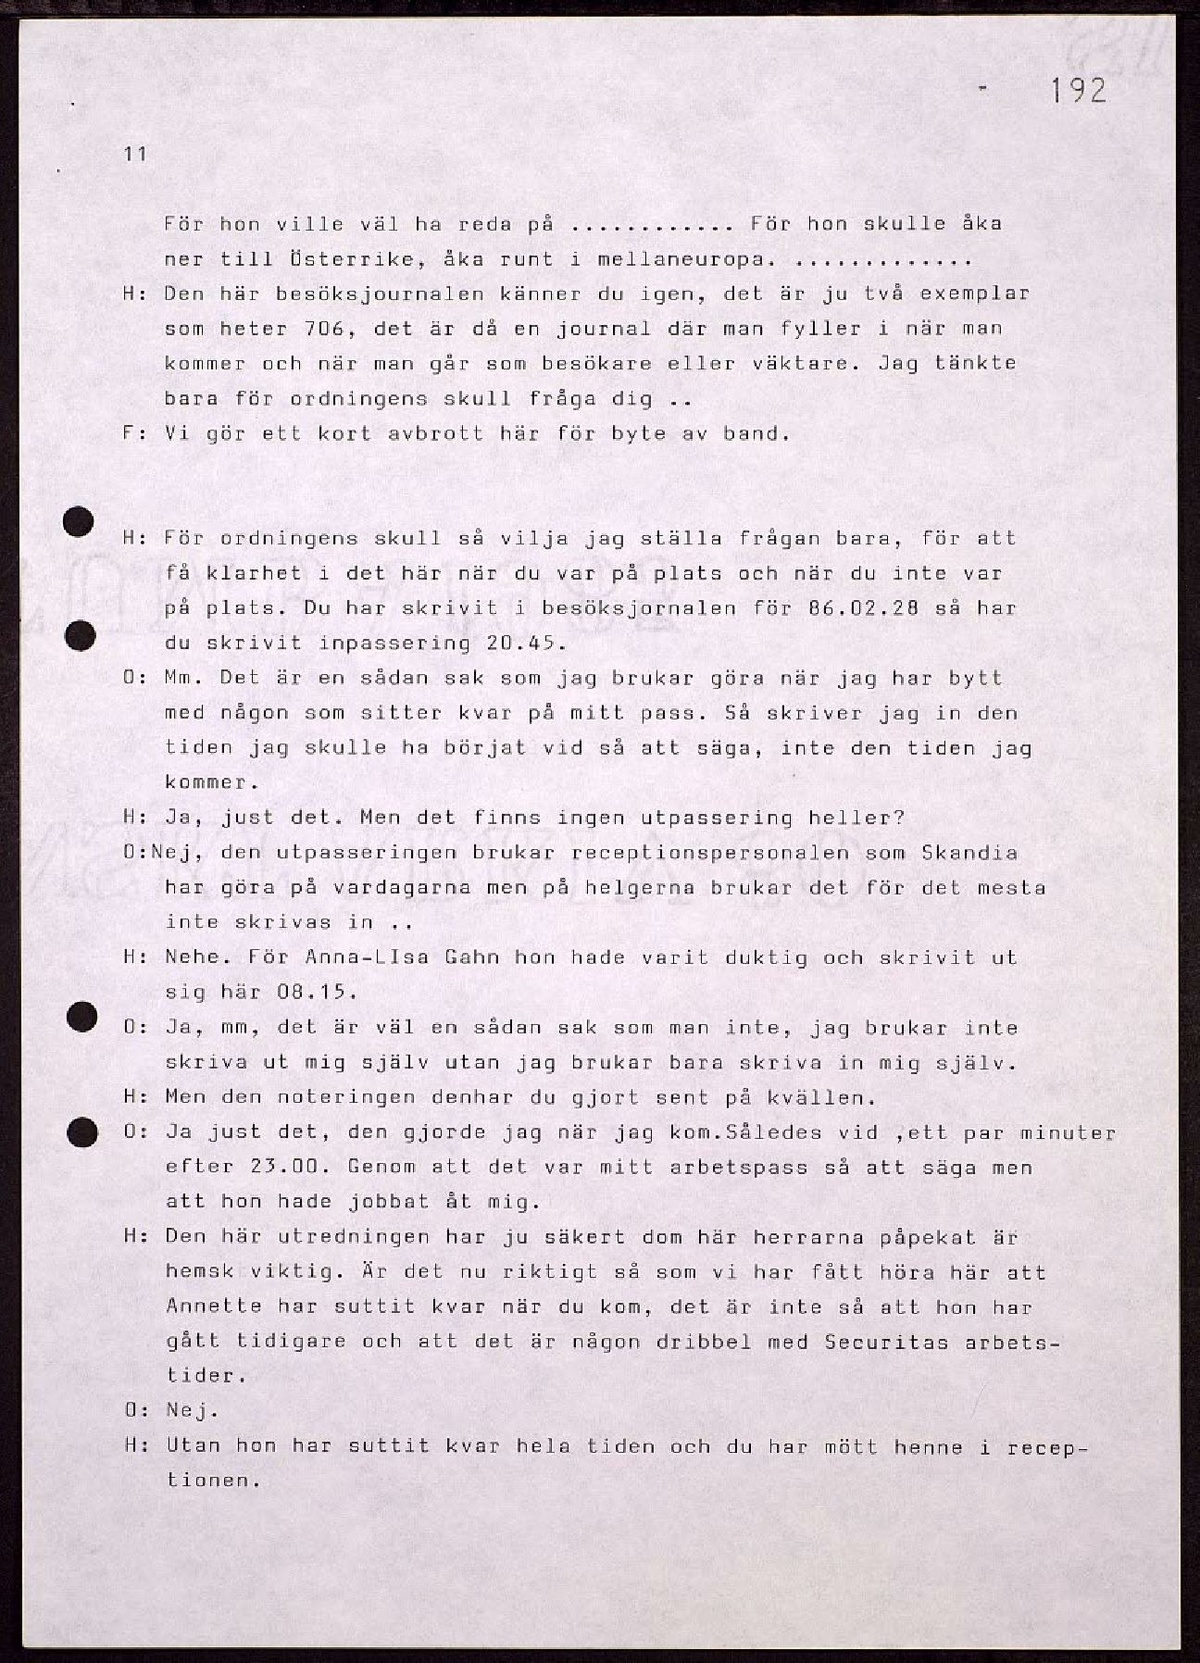 Pol-1986-06-12 1005 EA9982-02-A Tillägsförhör med Henry Olofsson.pdf